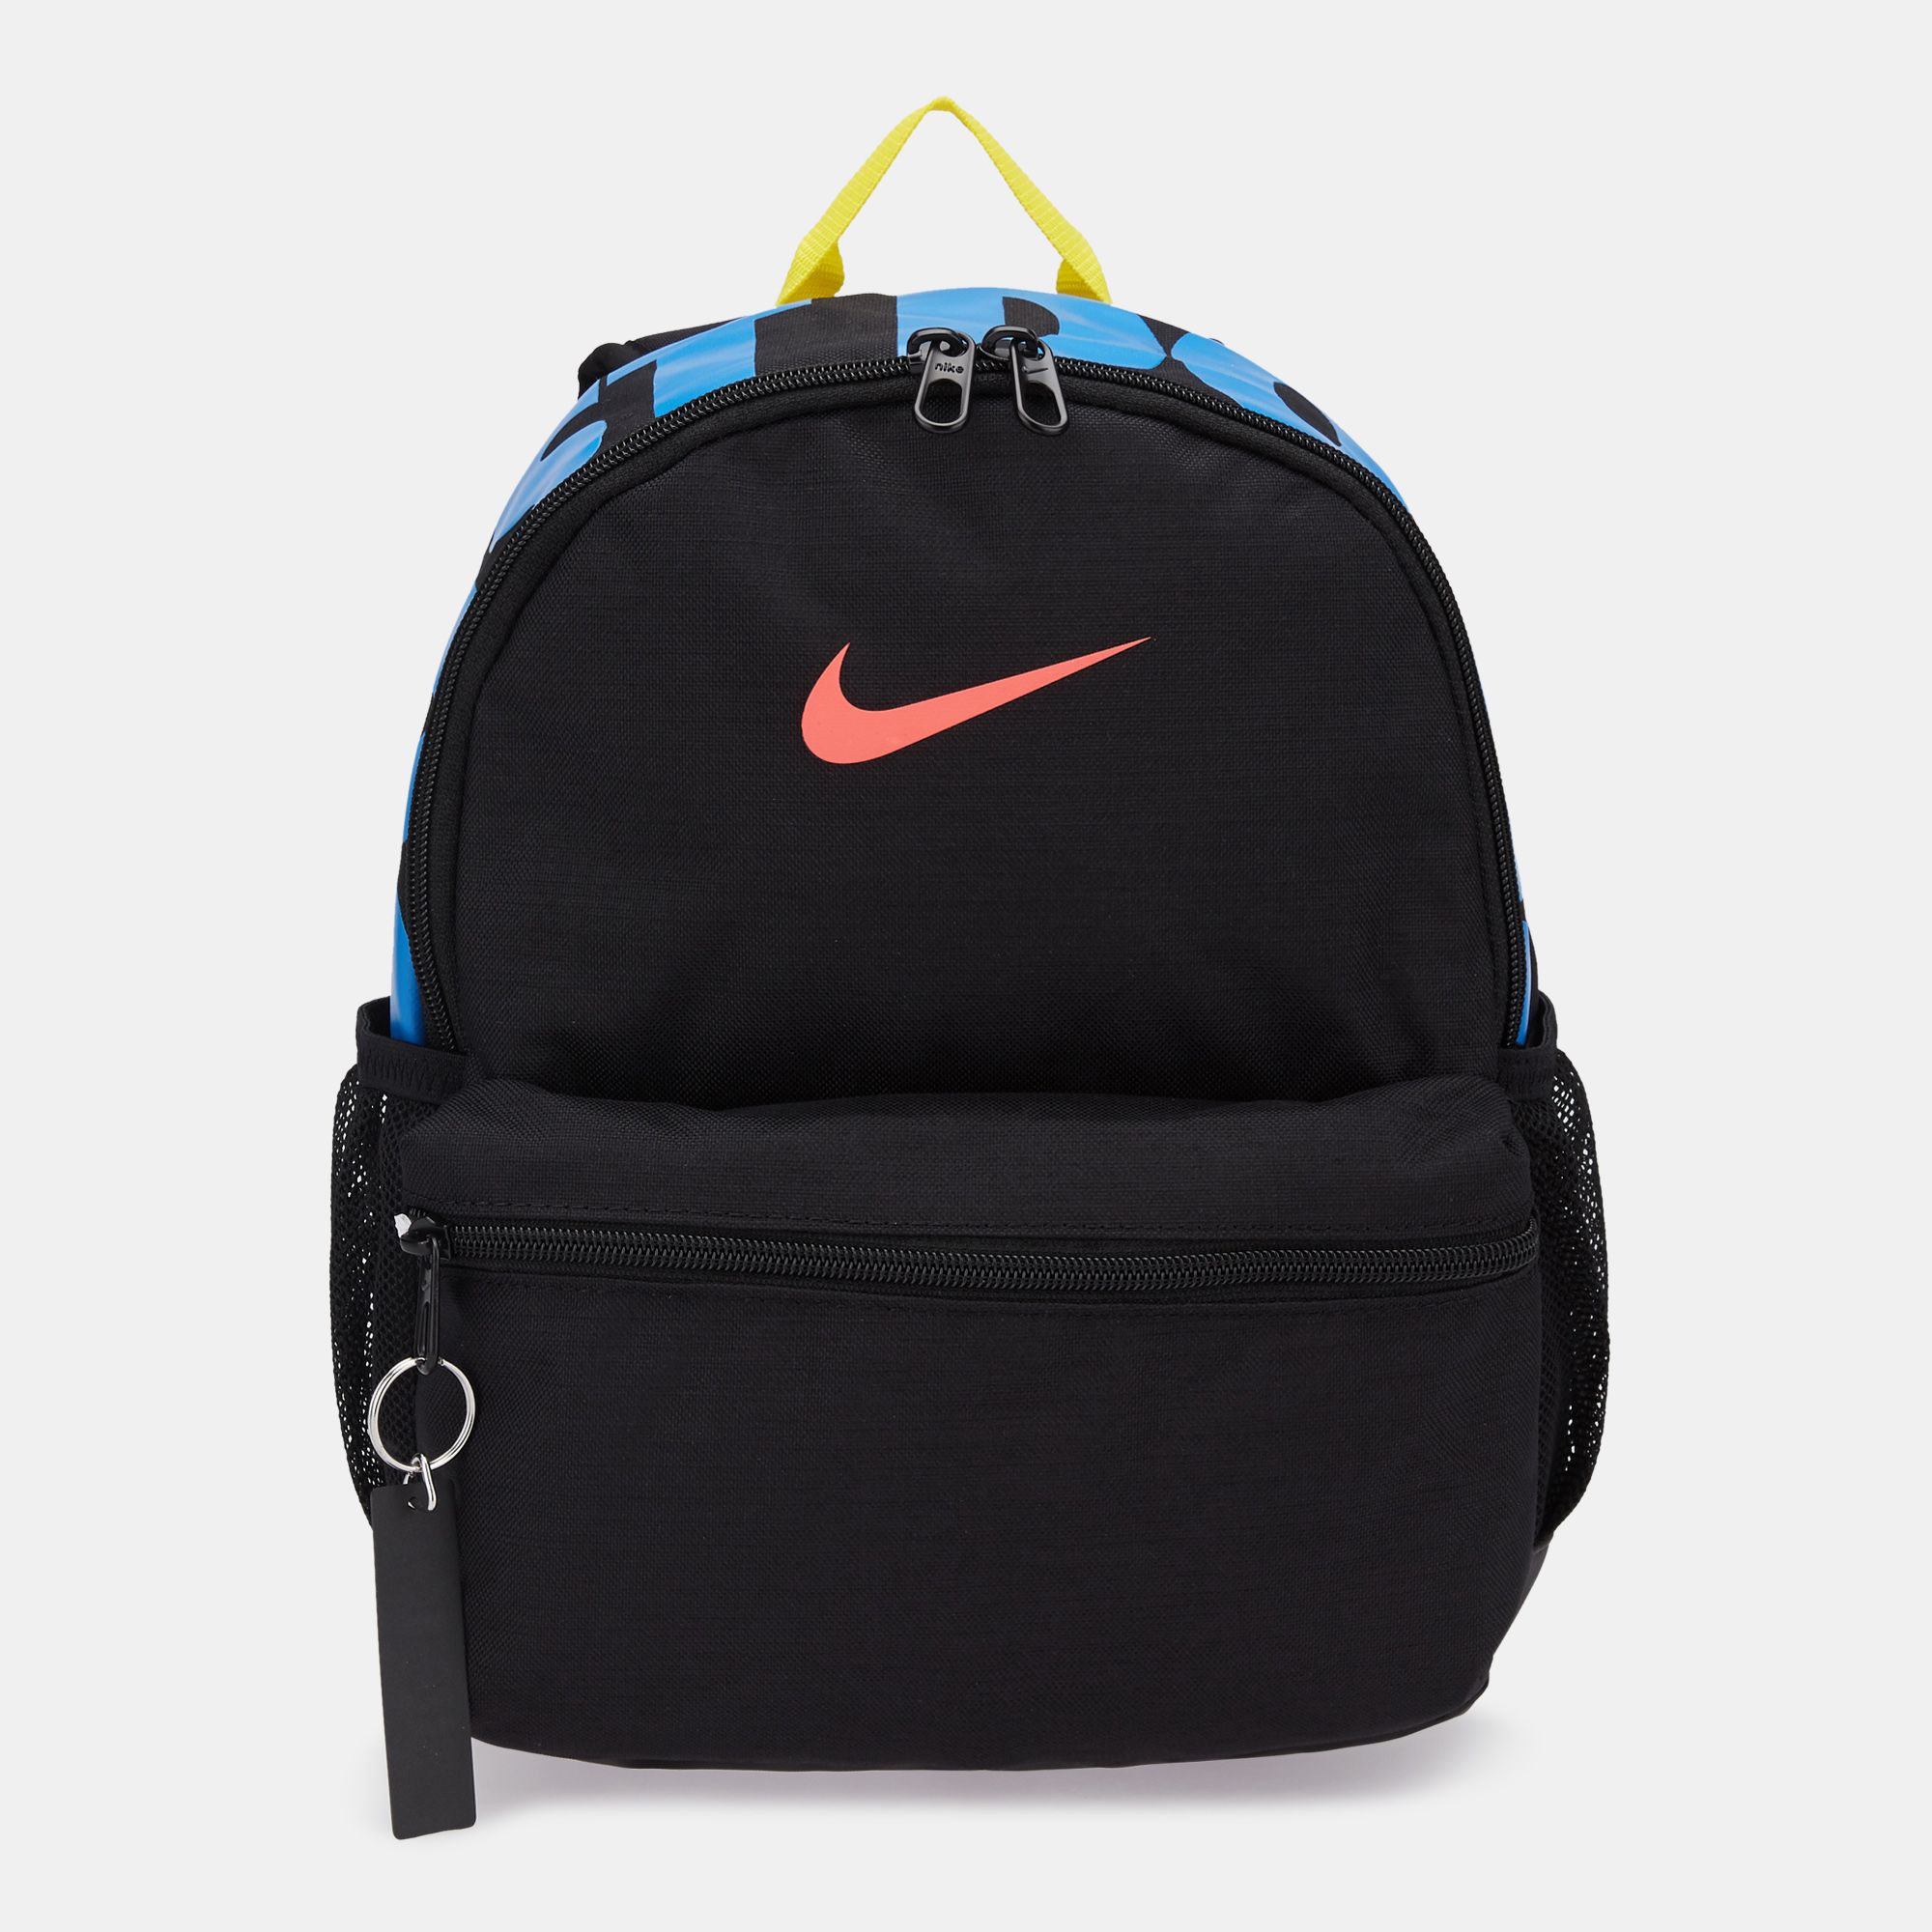 nike mini backpack black